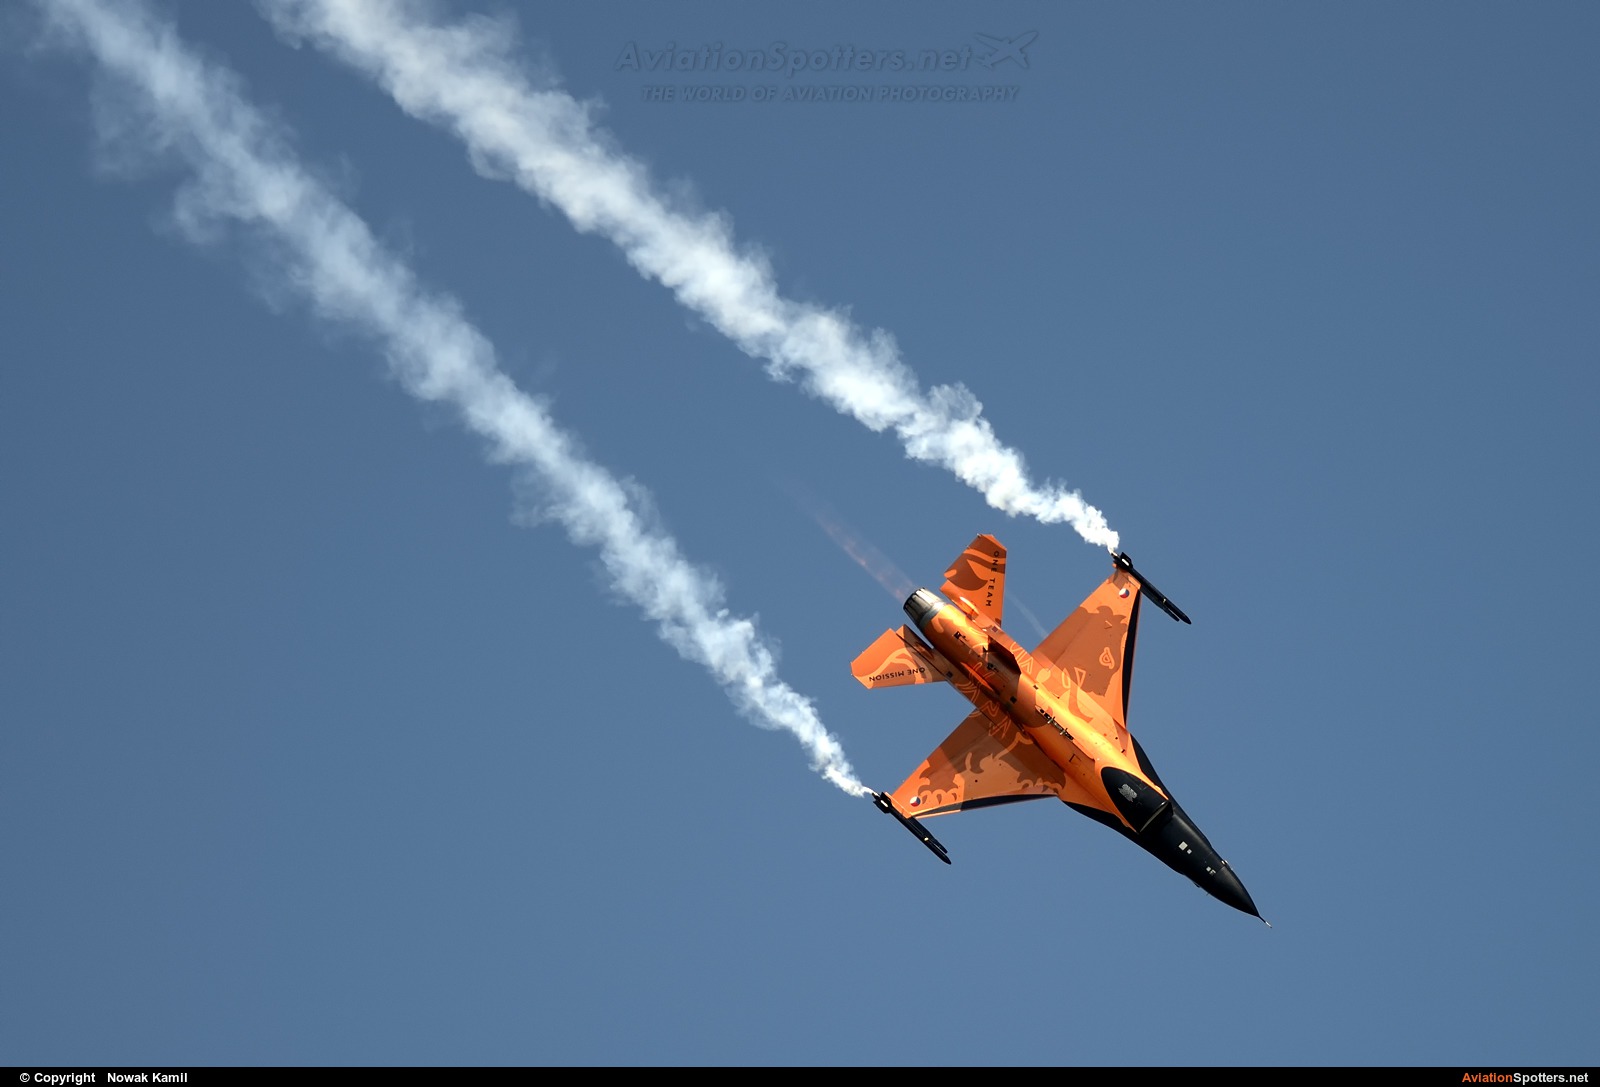   F-16AM Fighting Falcon  (J-015) By Nowak Kamil (kretek)